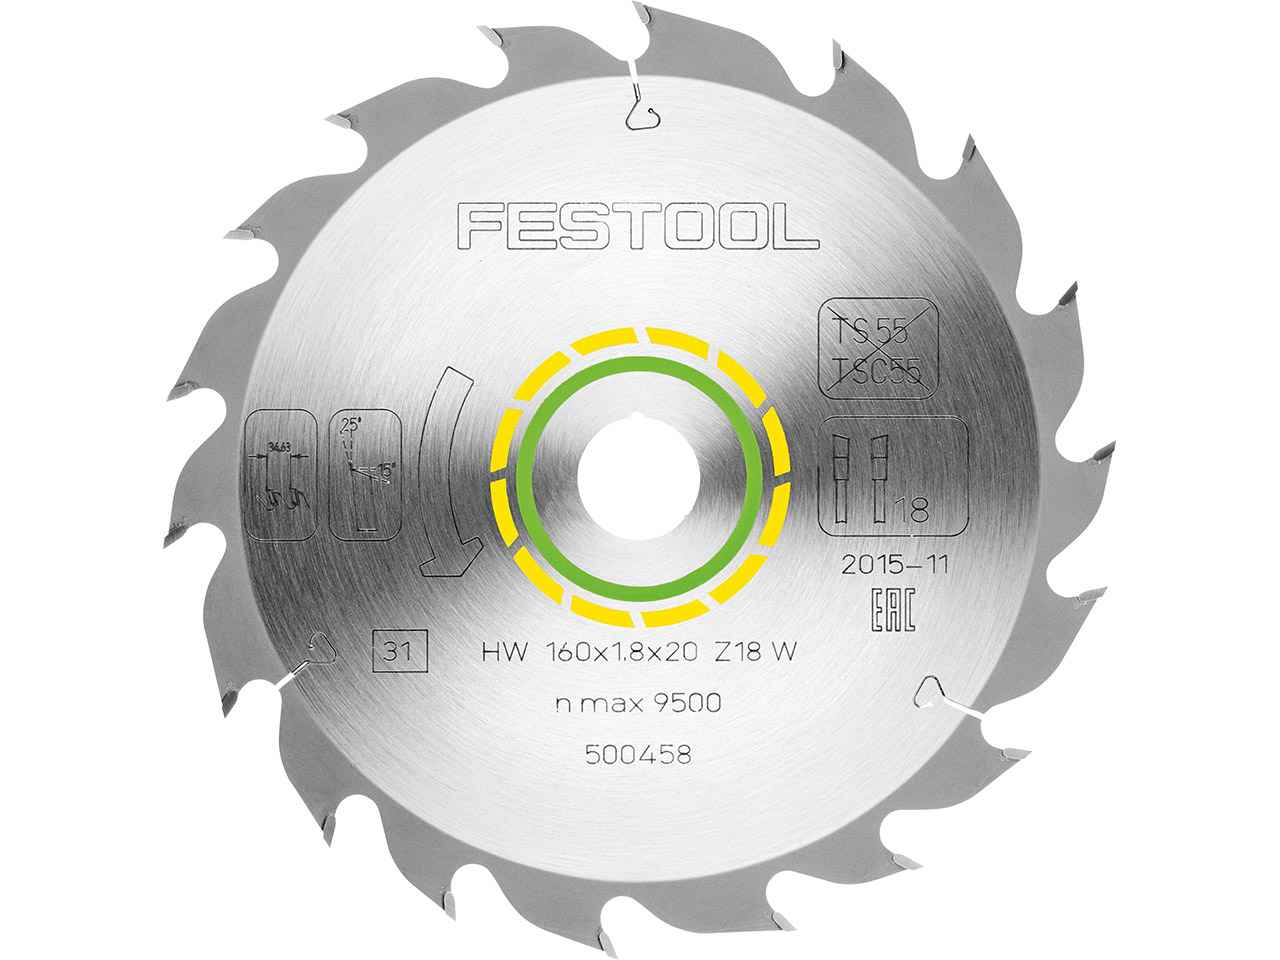 Festool Festool 500458 160mm x 20mm 18T Wood Standard Circular Saw